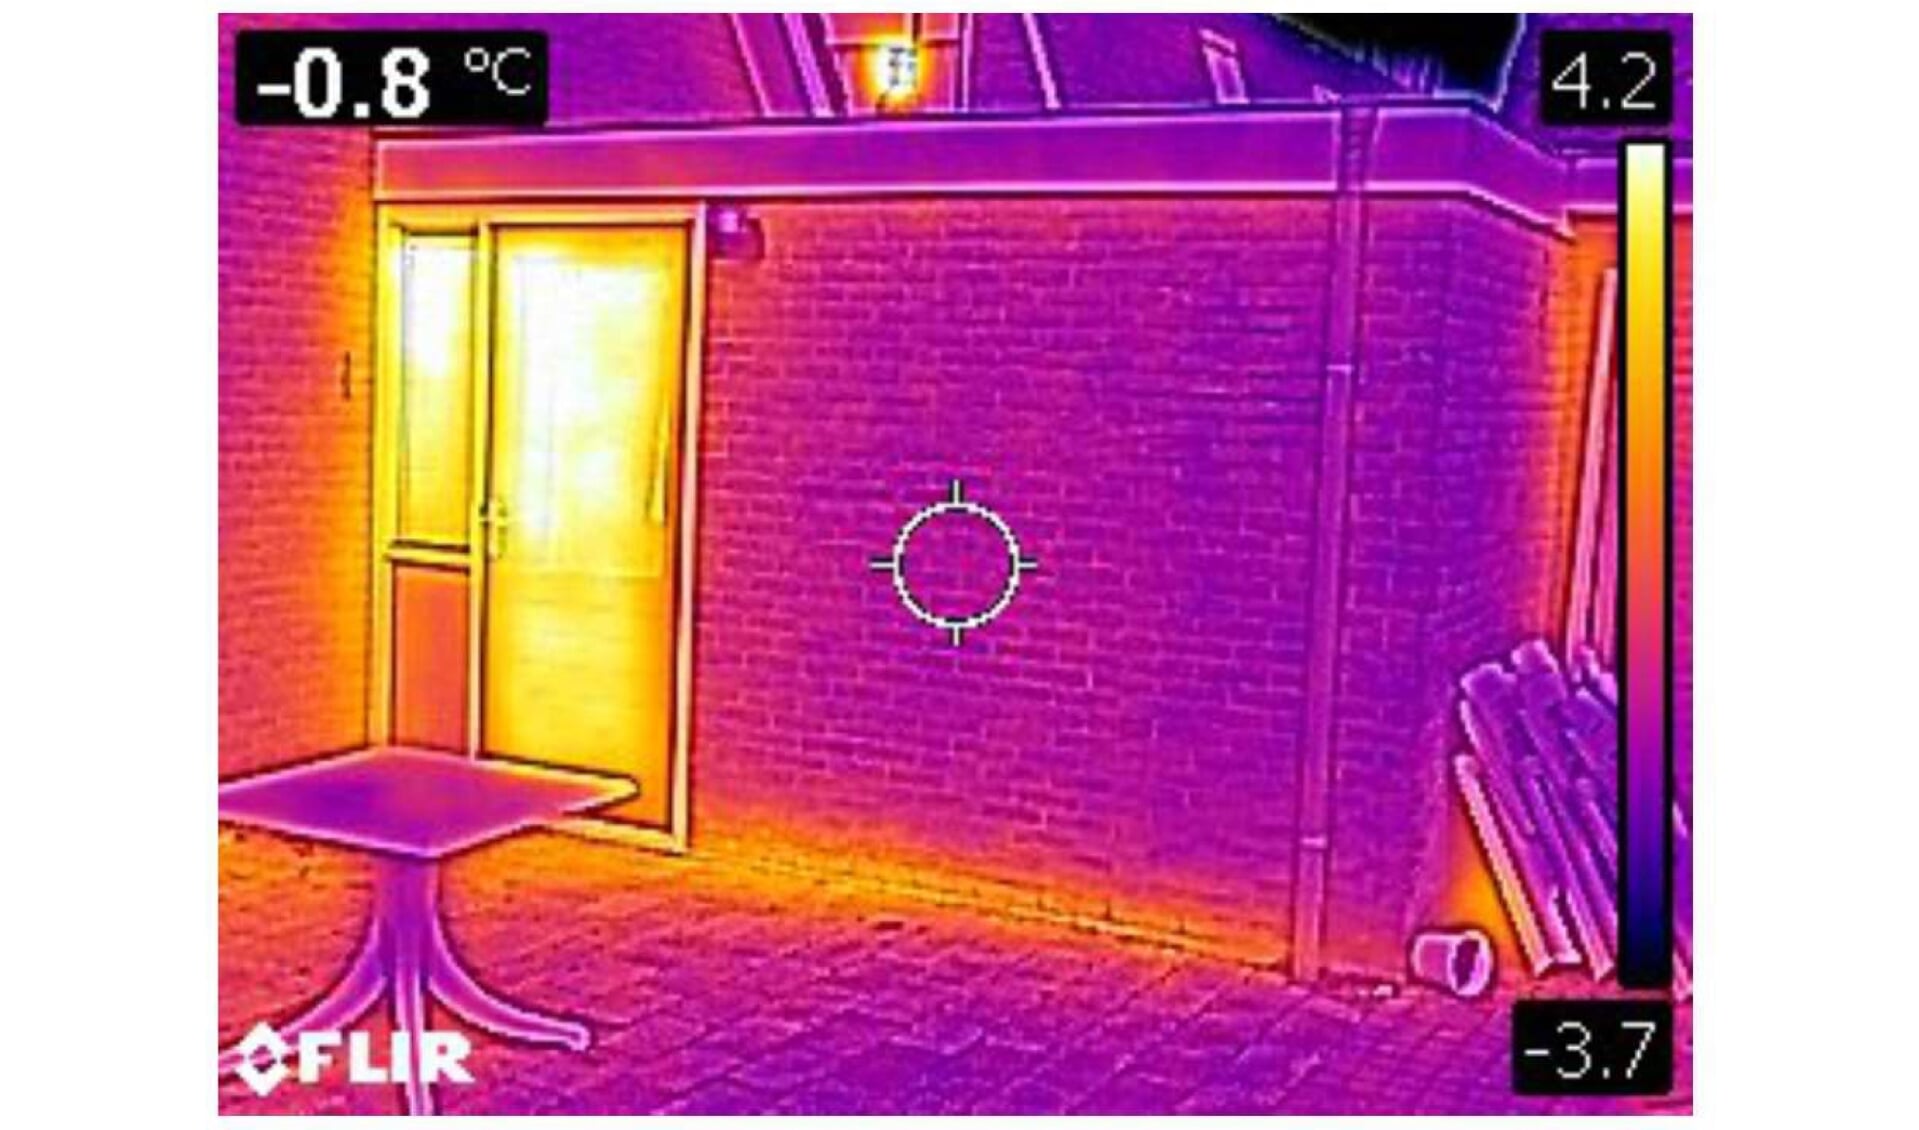 Met een warmte- of infraroodcamera krijg je de warmtelekken van een woning goed in beeld. 